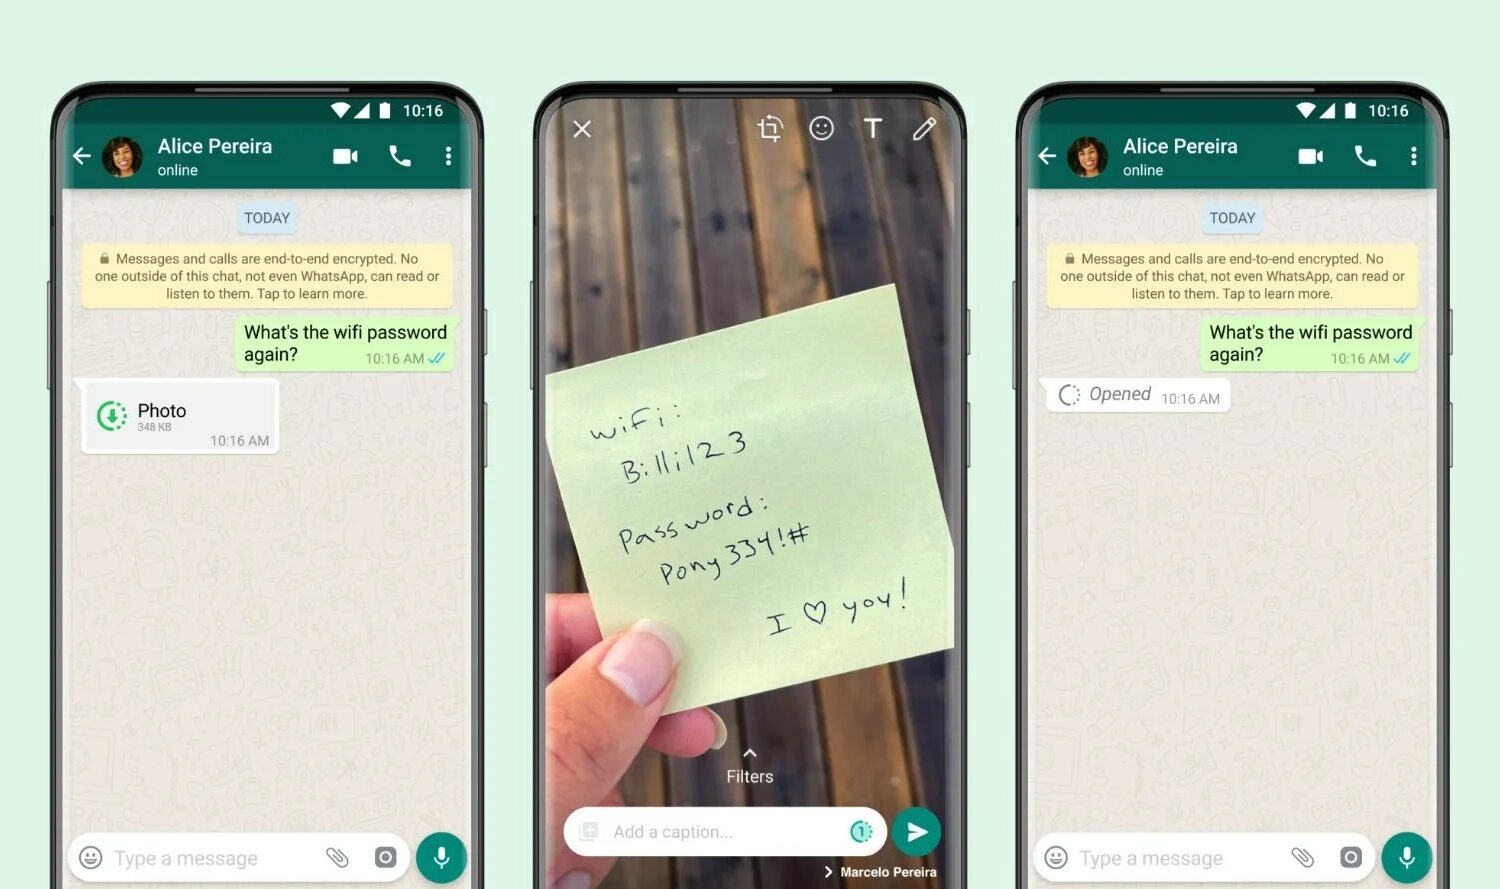 Graphique promotionnel Facebook montrant trois combinés Android avec le mode Afficher une fois de WhatsApp utilisé pour envoyer une photo éphémère dans un chat